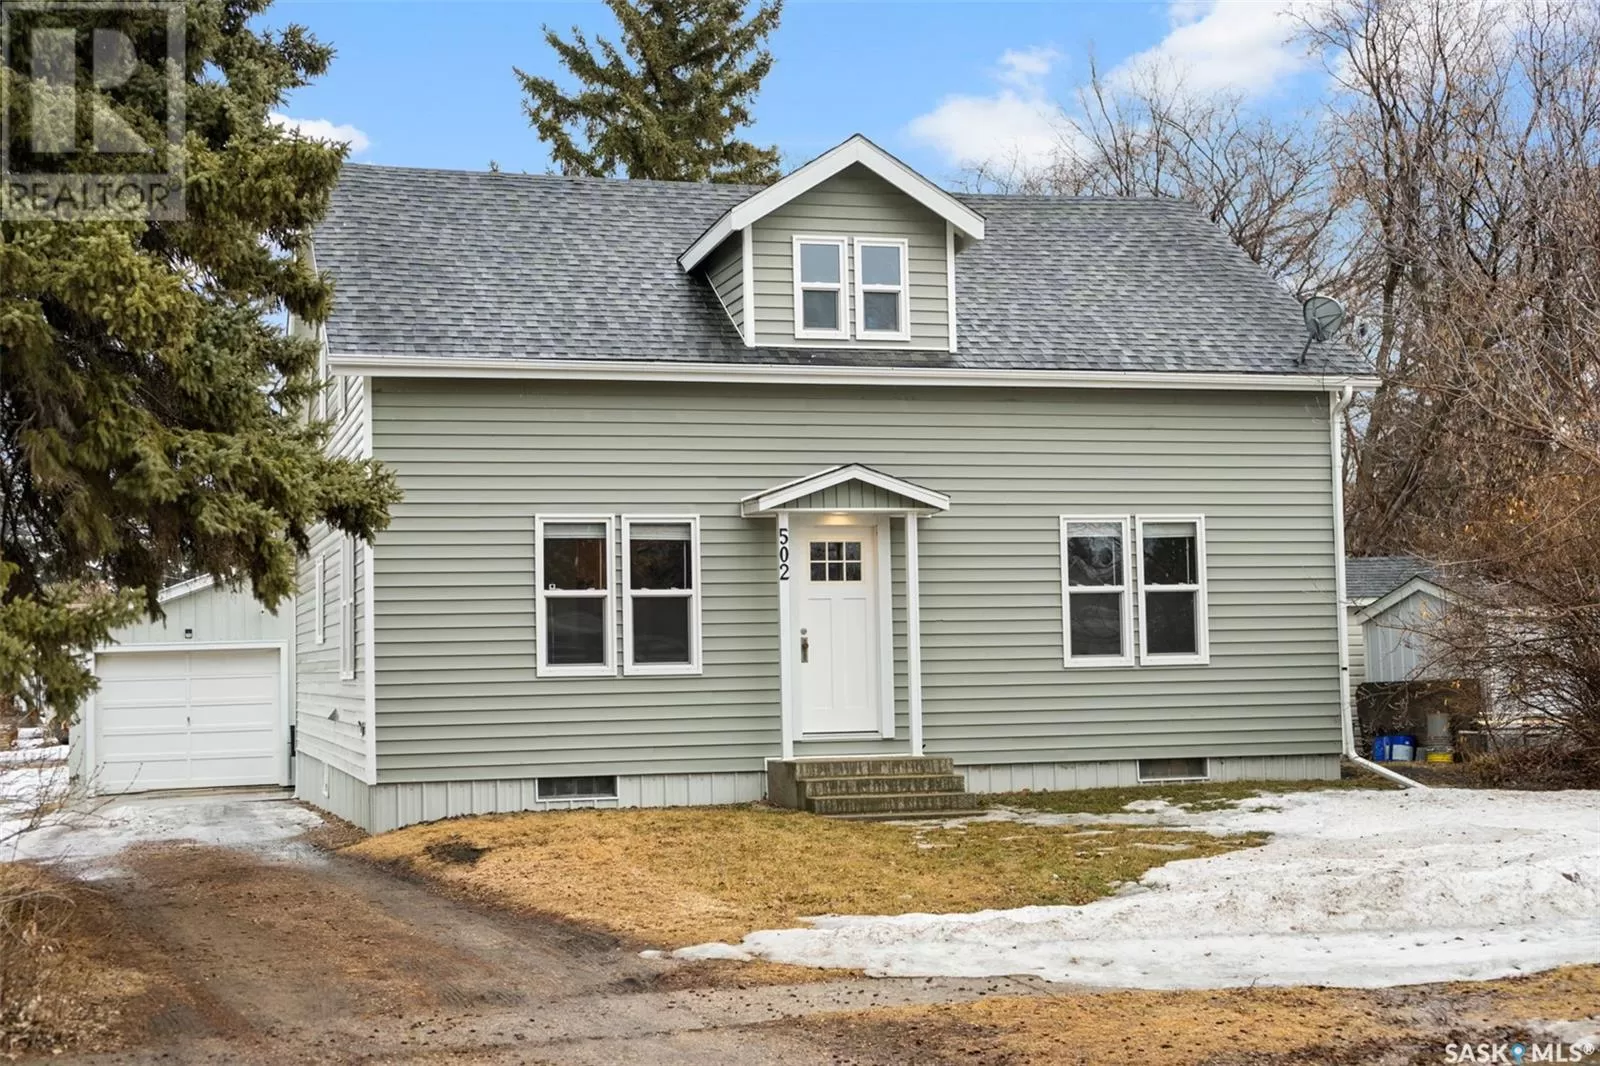 House for rent: 502 5th Avenue, Cudworth, Saskatchewan S0K 1B0